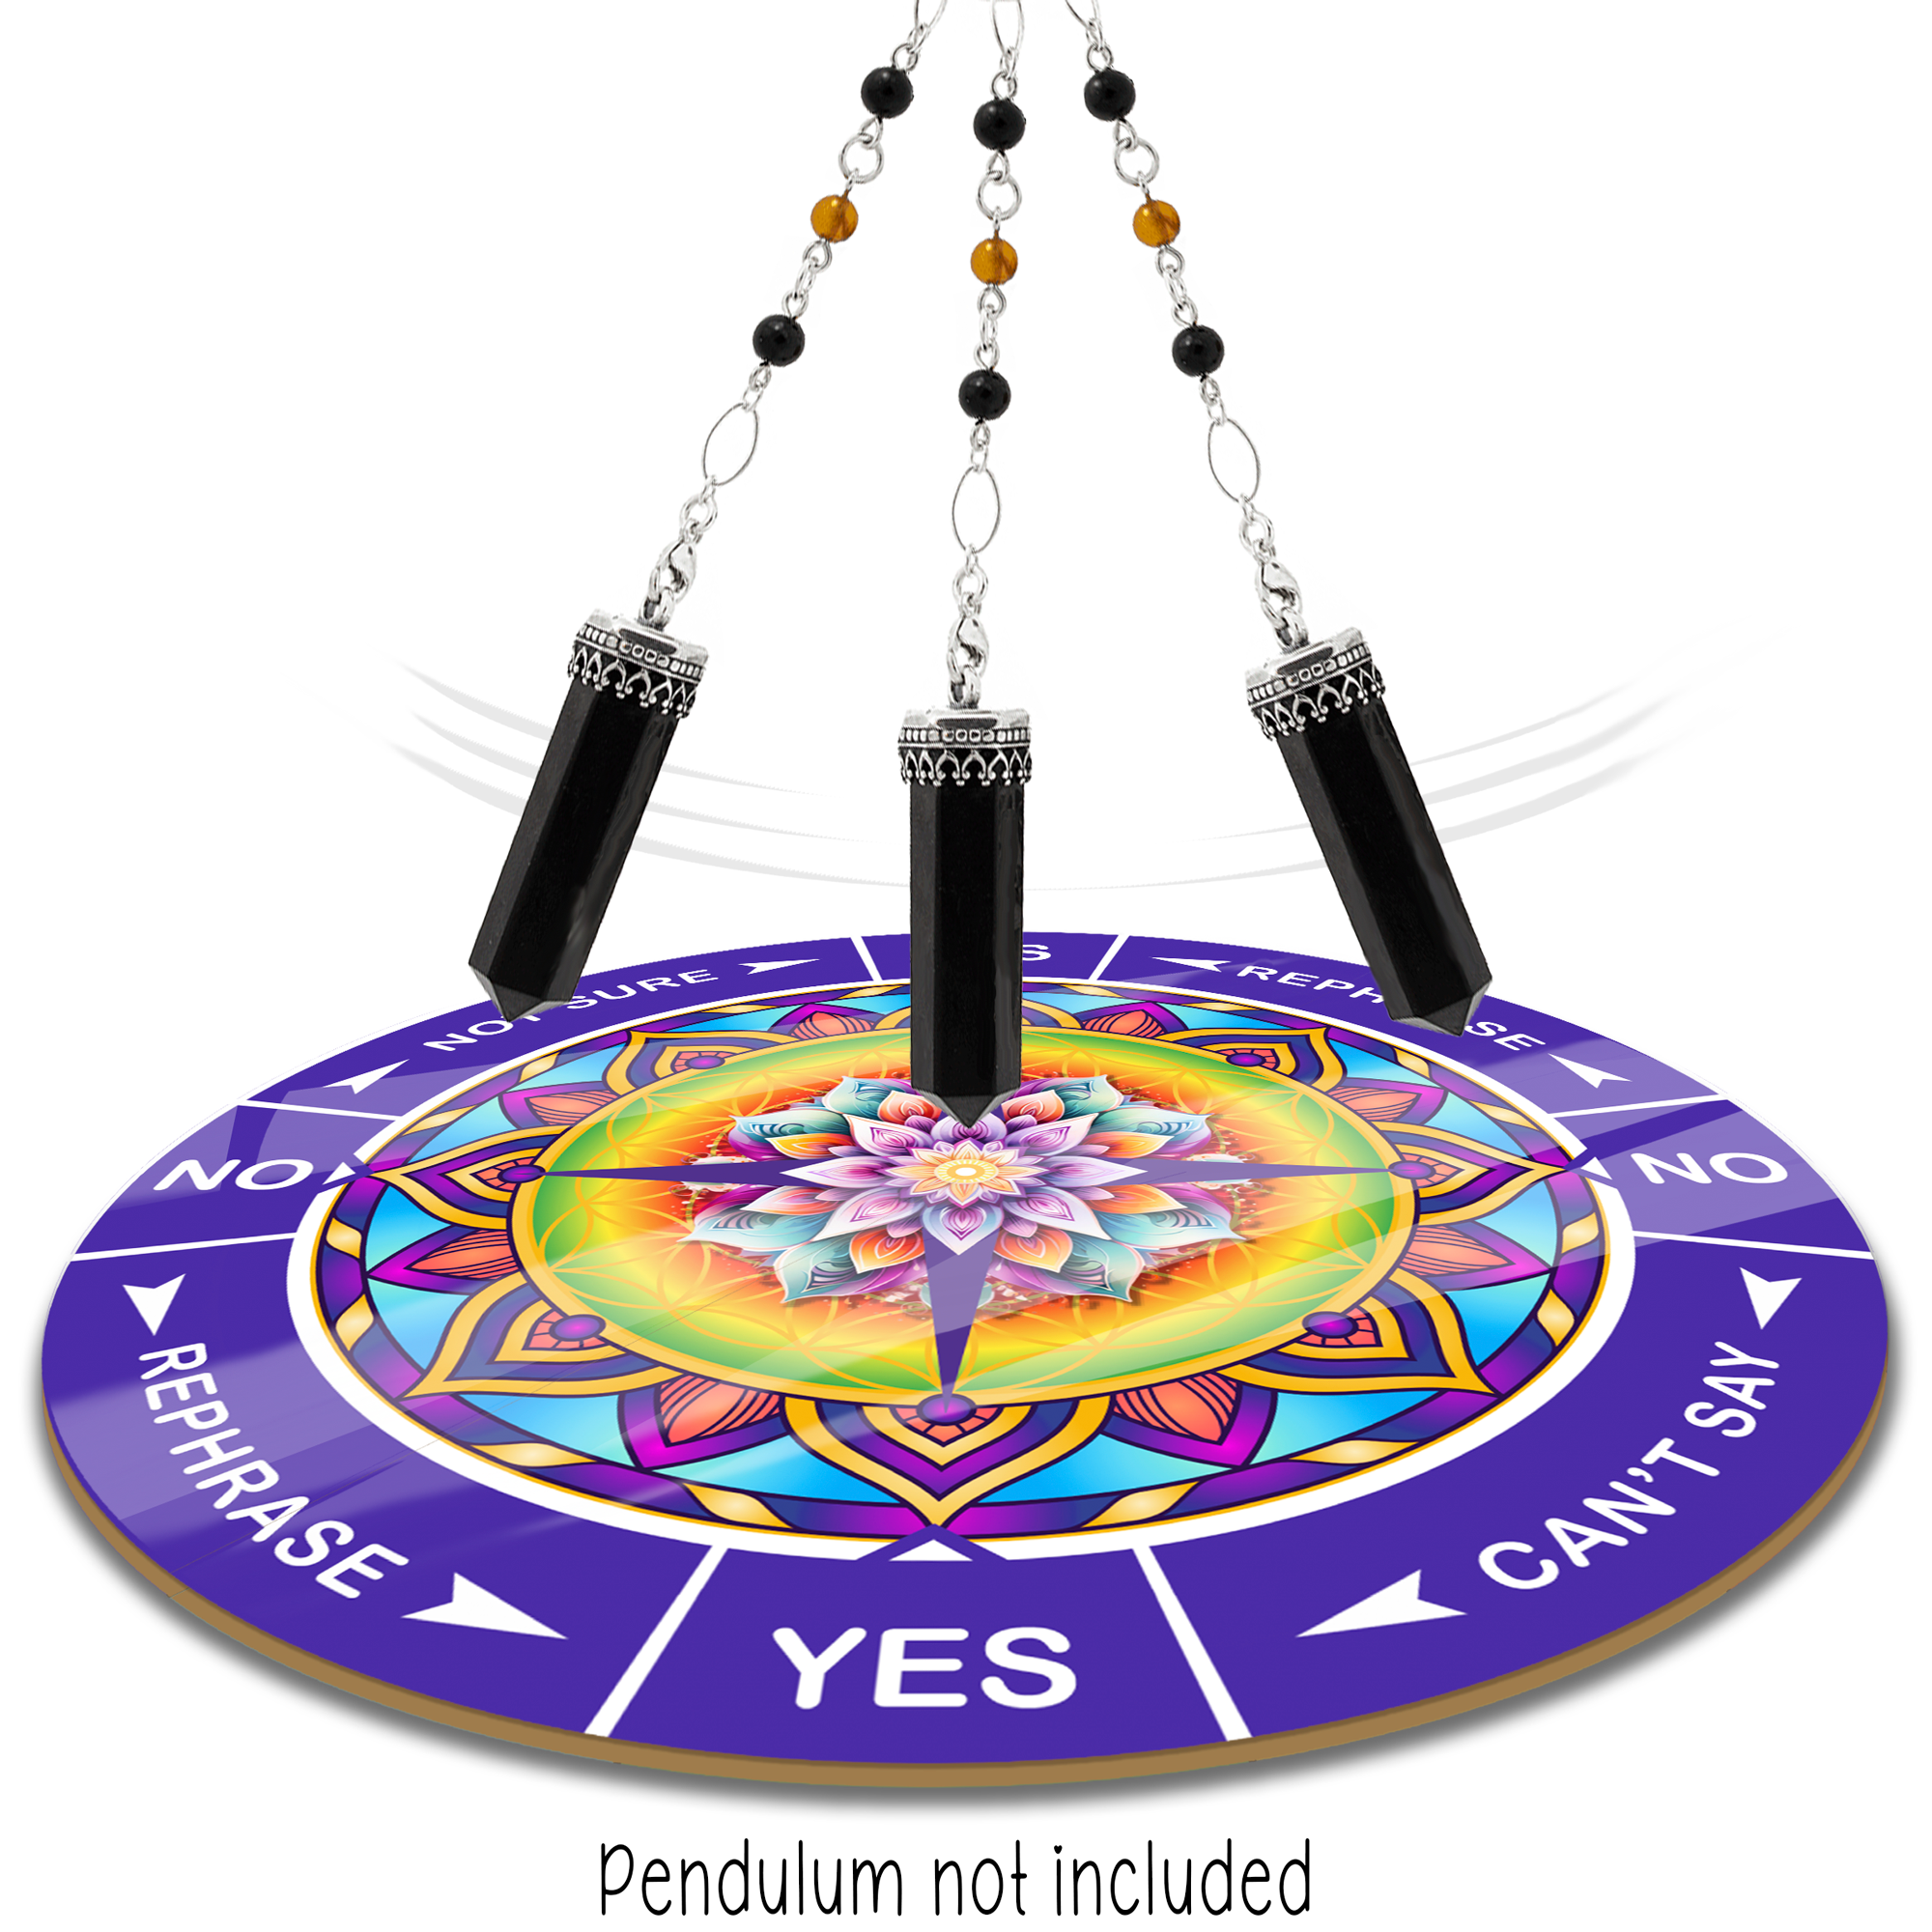 Colorful Mandala Yes/No Pendulum Chart - 8 inch round Aluminum